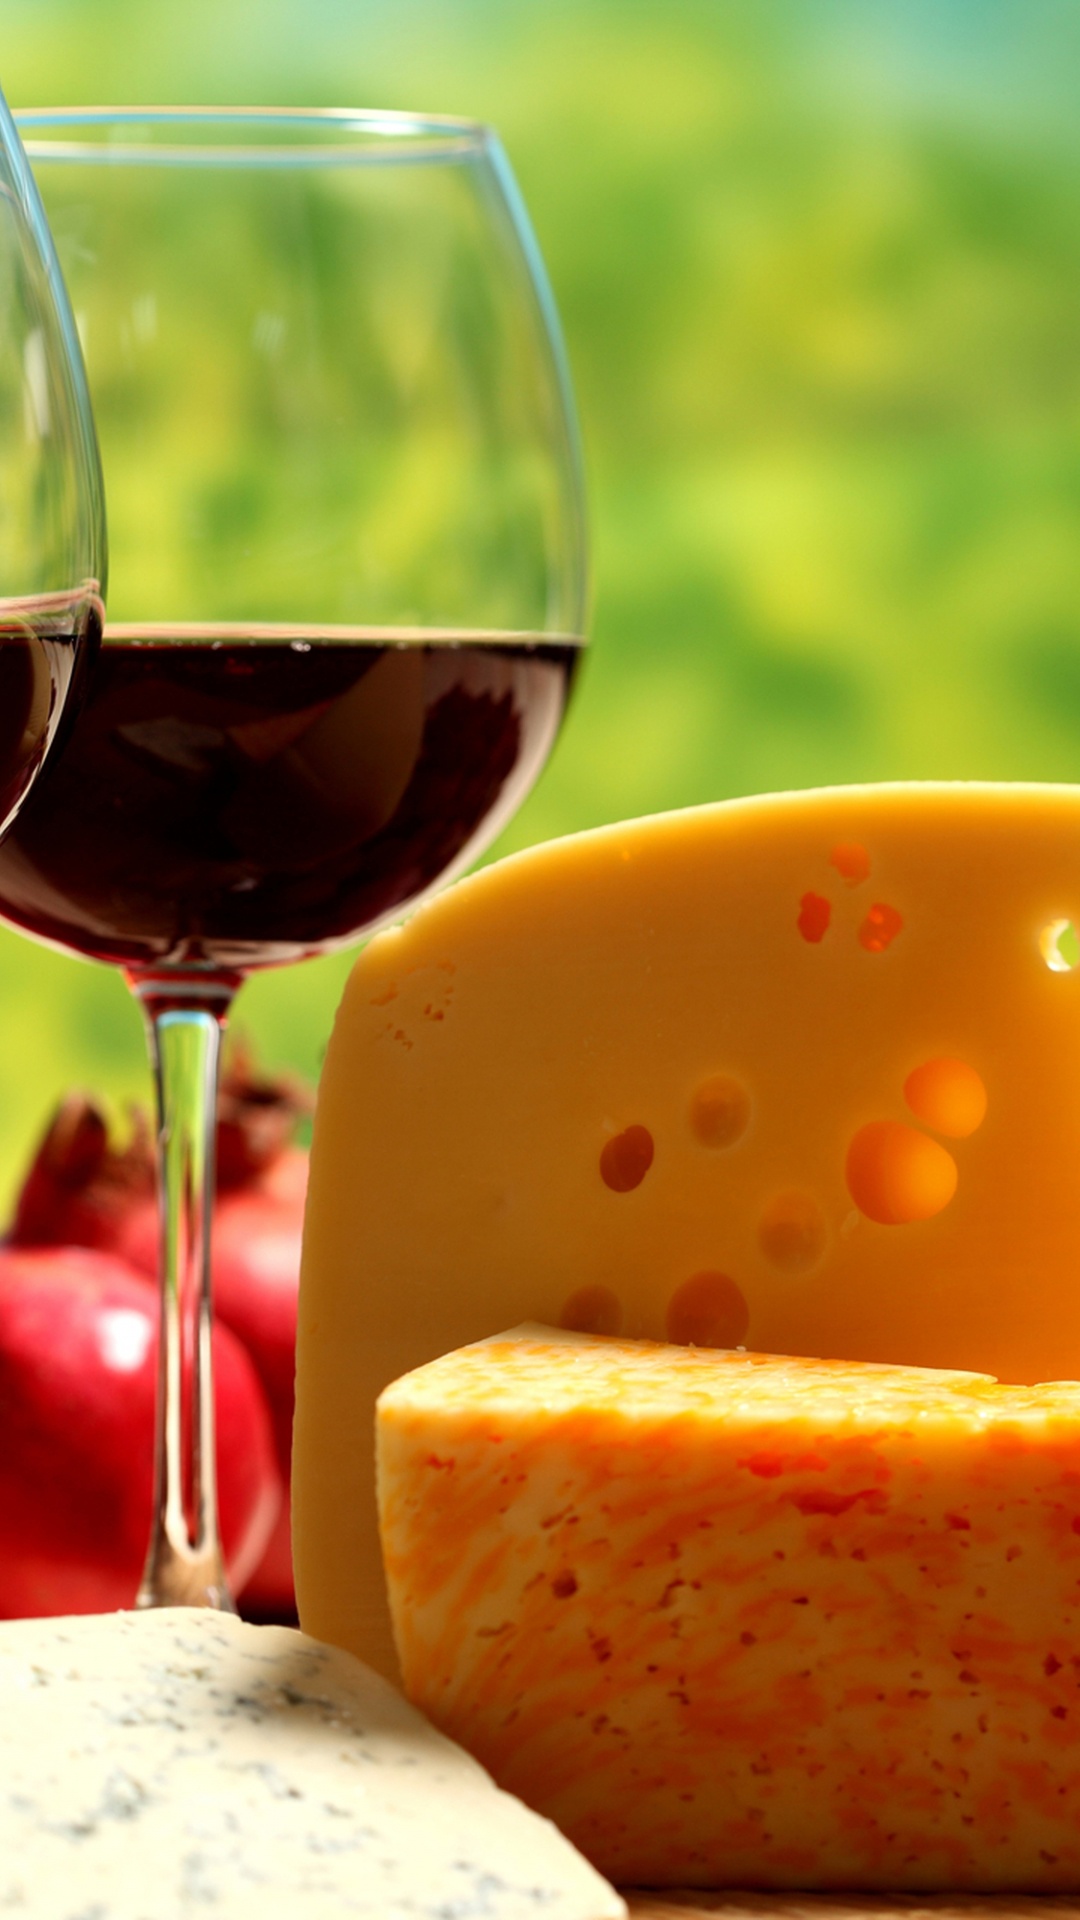 葡萄酒, 红葡萄酒, 奶酪, 葡萄酒杯, 食品 壁纸 1080x1920 允许